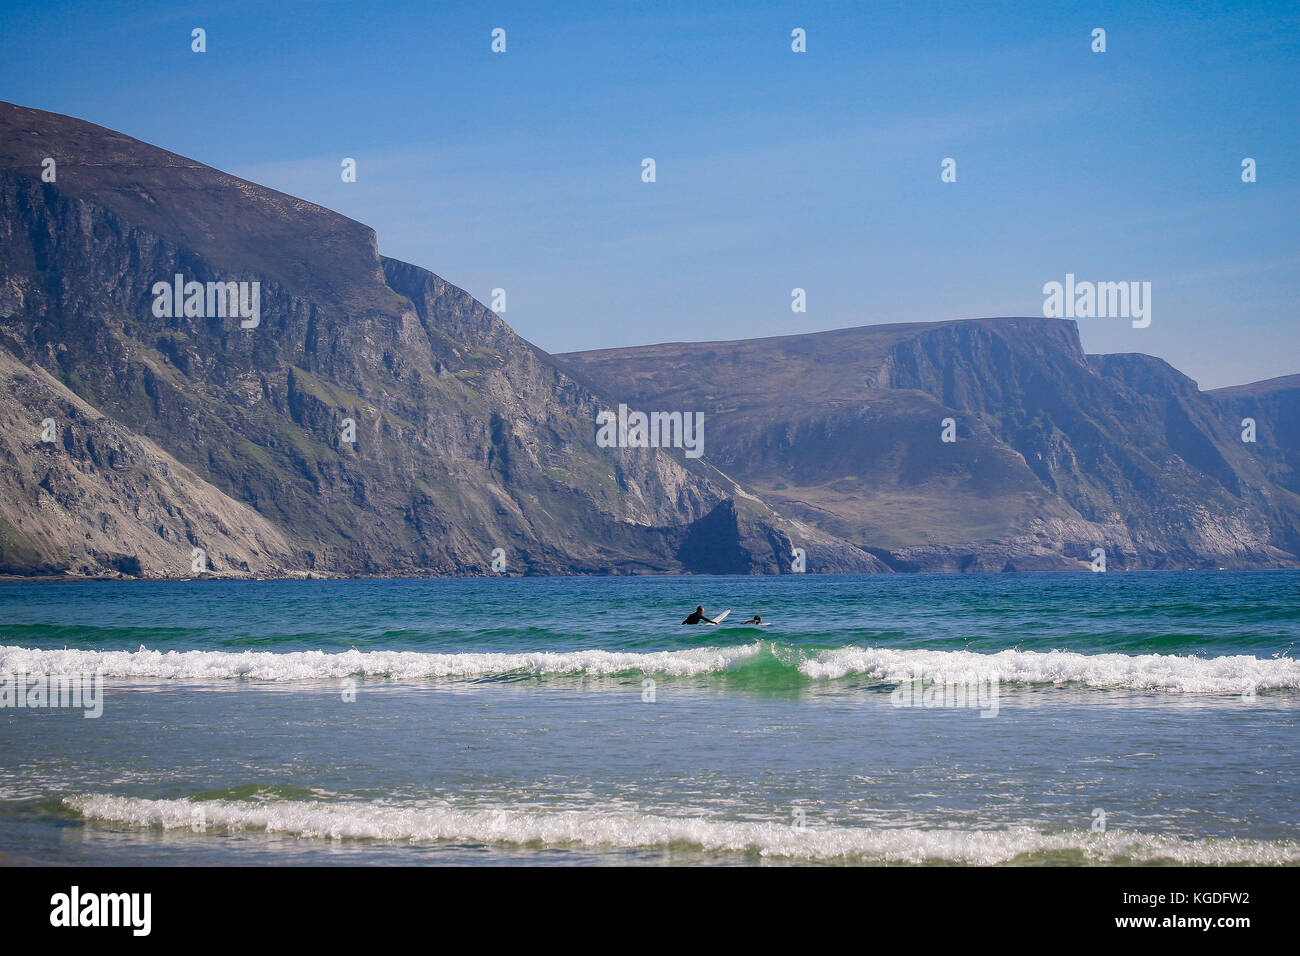 Surfers in acqua alla ricerca di onde con spettacolari scogliere minaun in background su una sabbiosa spiaggia di chiglia, Achill Island, nella contea di Mayo, Irlanda Foto Stock